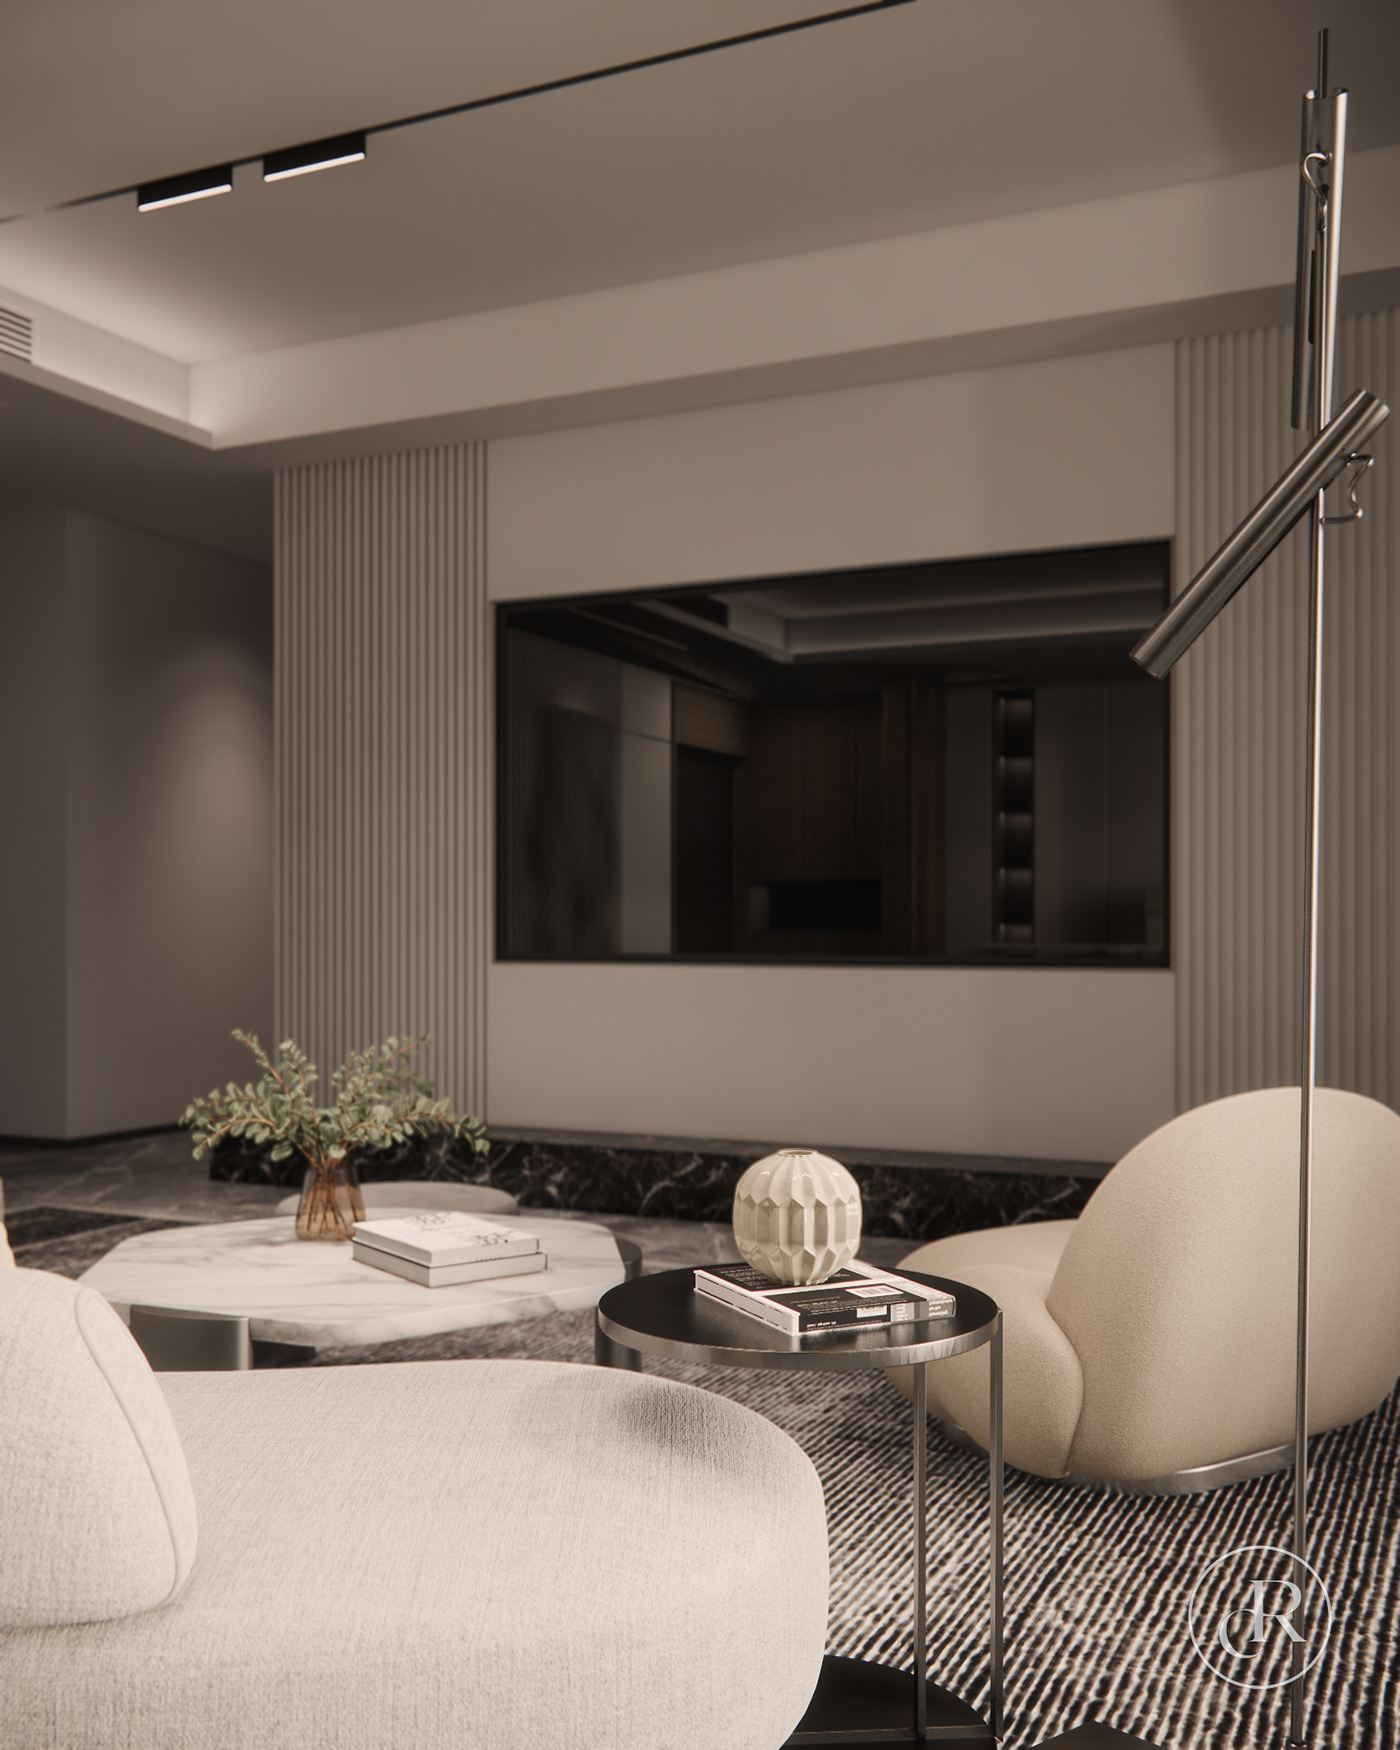 enscape interior design  Render visualization living room SketchUP cozy interior CGI Enscape Render cozy